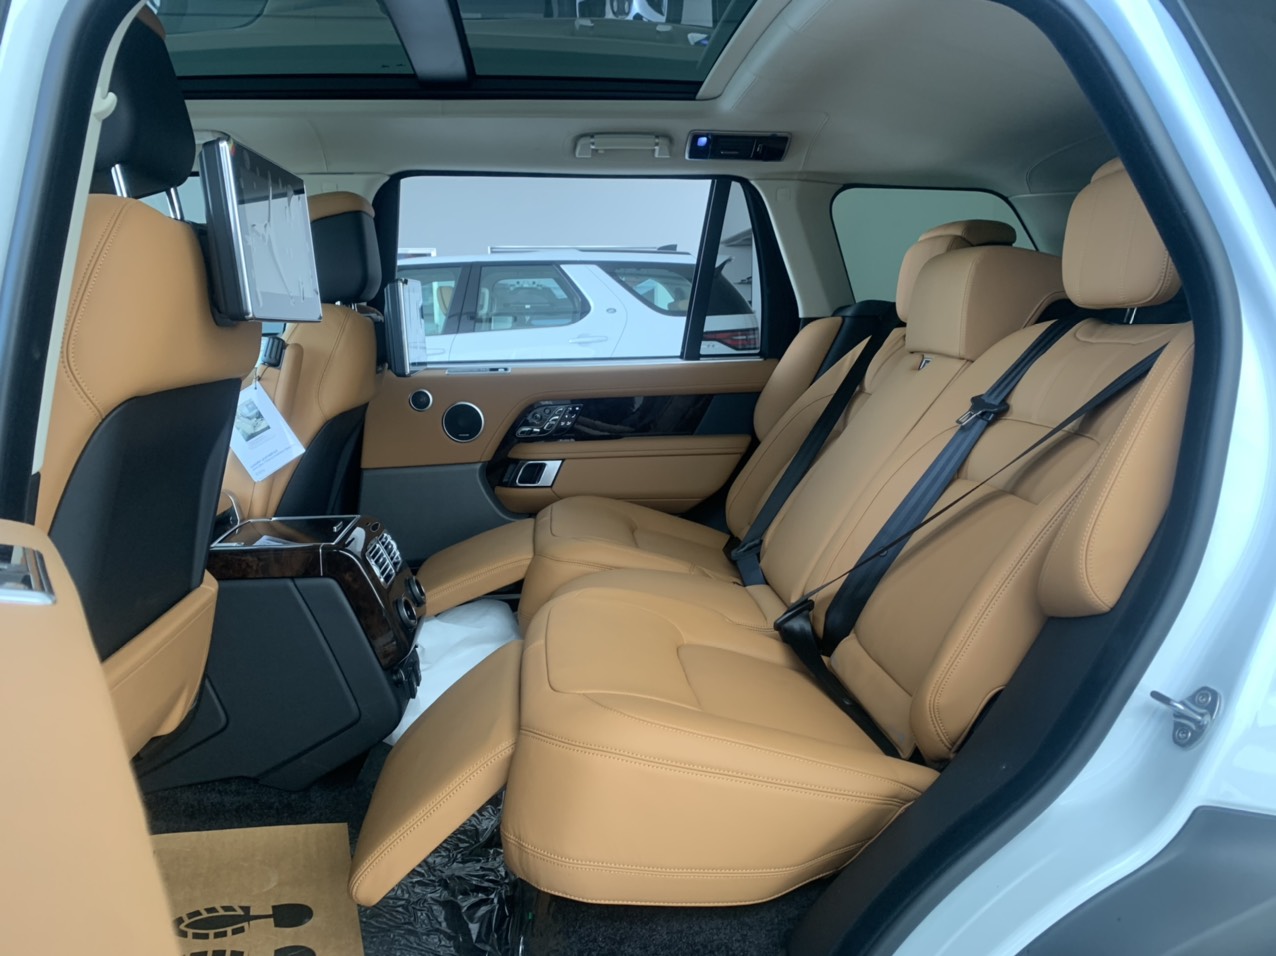 Hàng ghế sau kiểu thương gia trên range rover autobiography lwb màu da bò nâu 2020